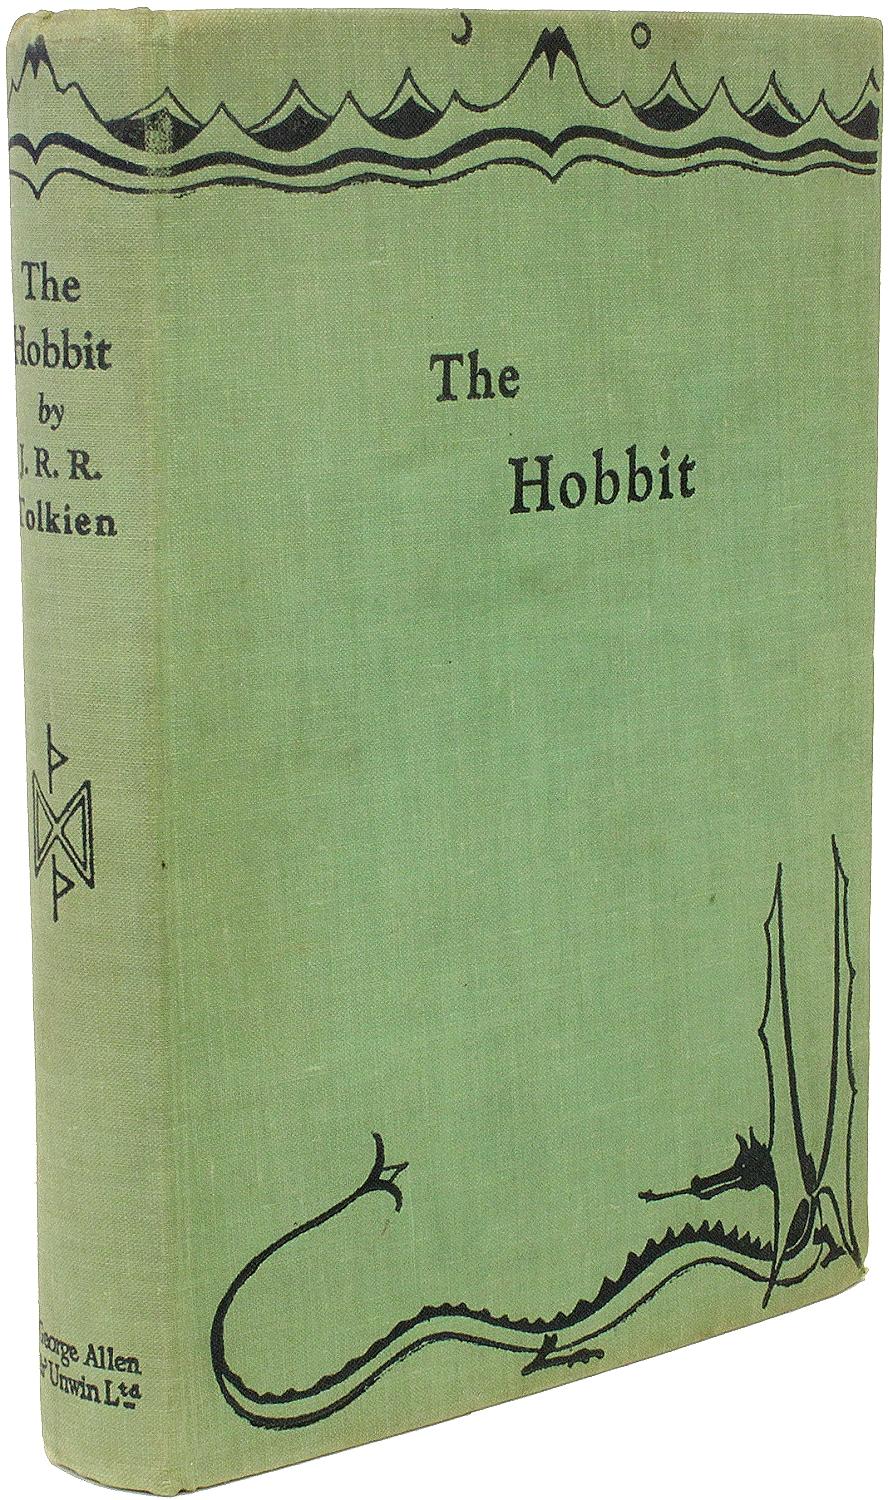 AUTEUR : TOLKIEN, J. R. R. 

TITRE : Le Hobbit ou l'aller-retour.

ÉDITEUR : Londres : George Allen & Unwin Ltd, 1937.

DESCRIPTION : PREMIÈRE ÉDITION, PREMIÈRE IMPRESSION. 1 vol., 7-11/16